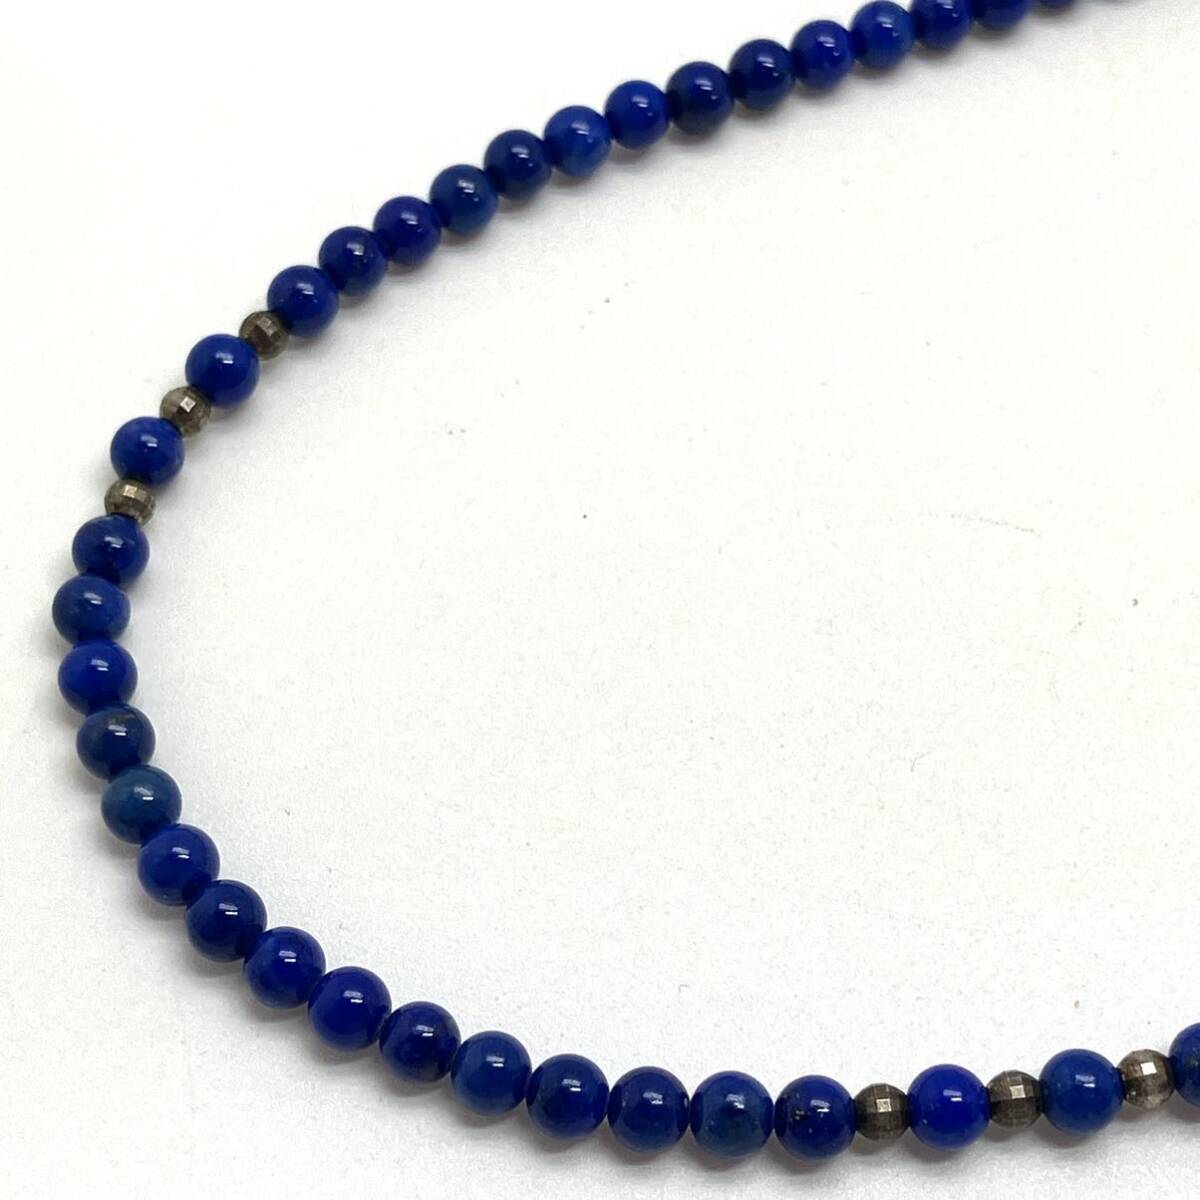 ［ラピスラズリネックレス5点おまとめ］m 重量約113.0g lapis lazuli 瑠璃 necklace accessory ペンダント pendant jewelry silver DA0 の画像3